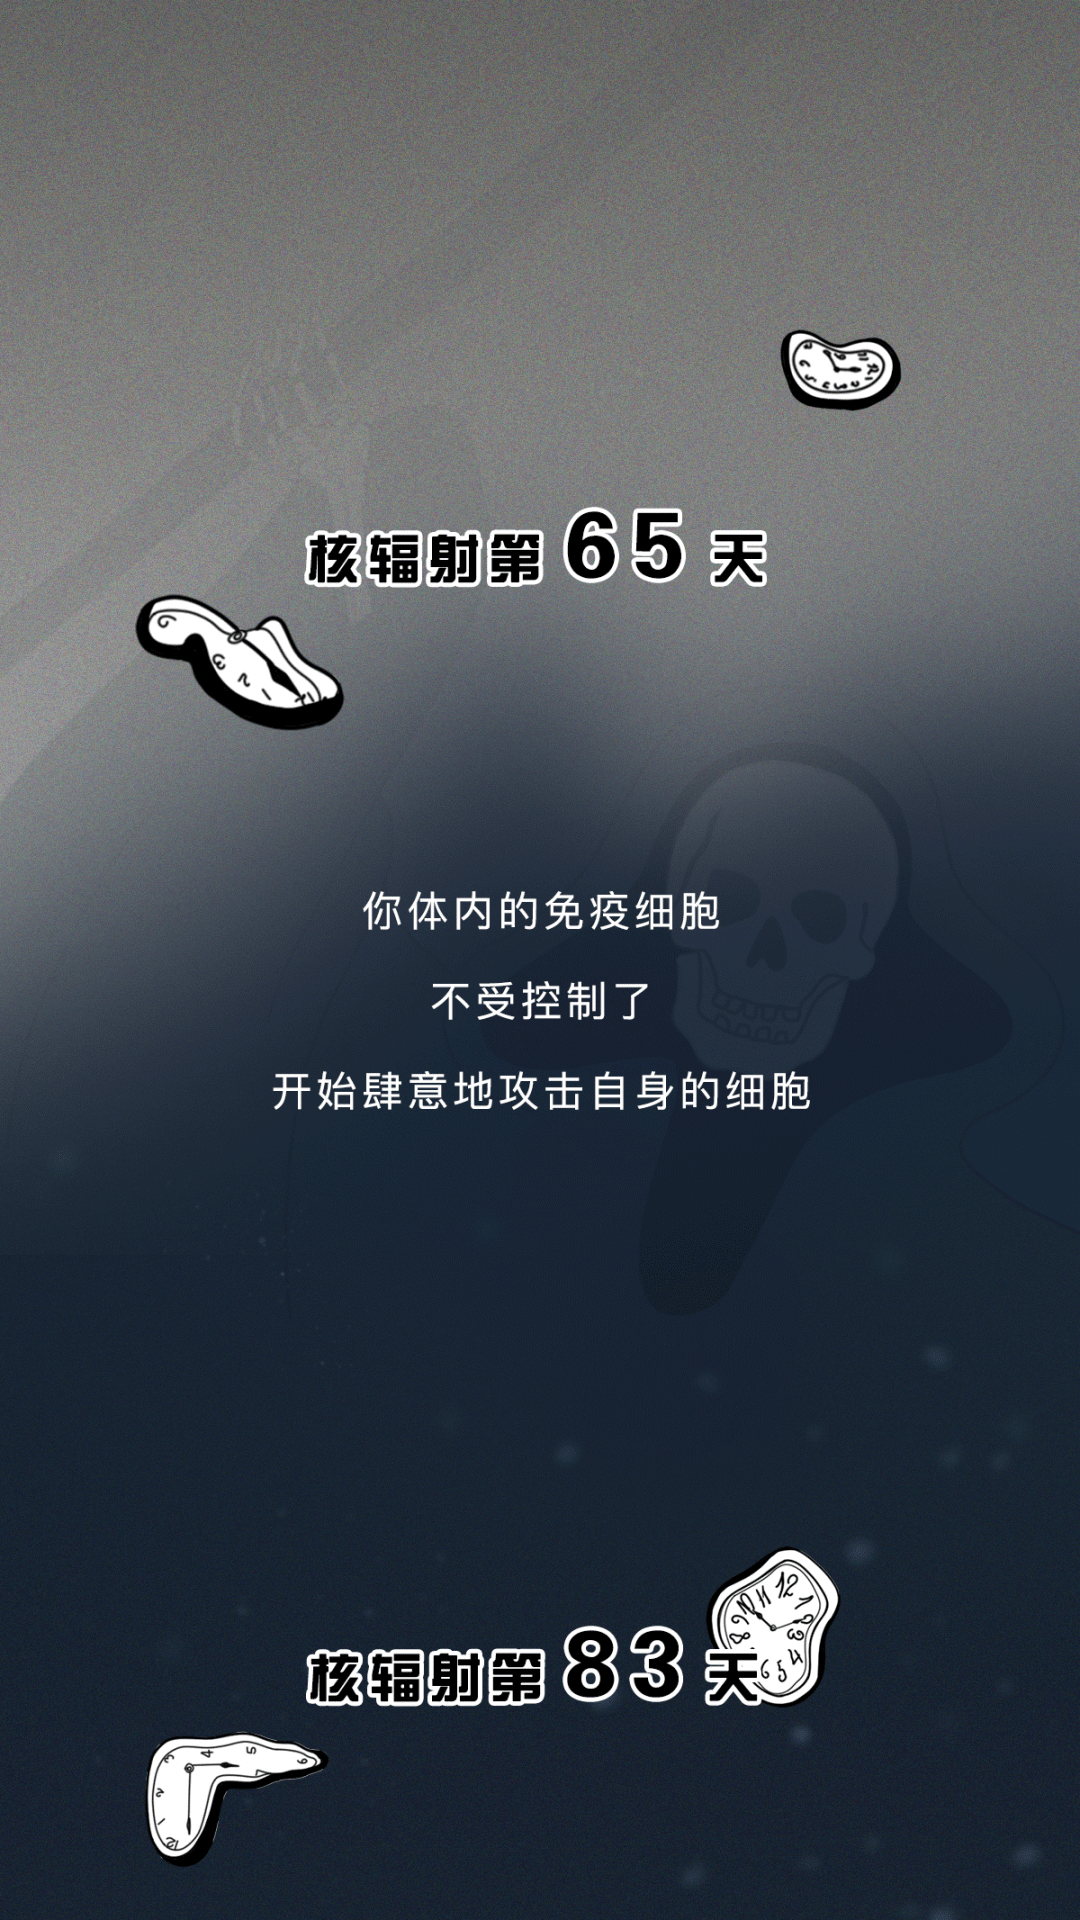 抗议日本倒核废水！中国插画师“辐世绘”神作警示世人 - 封面新闻